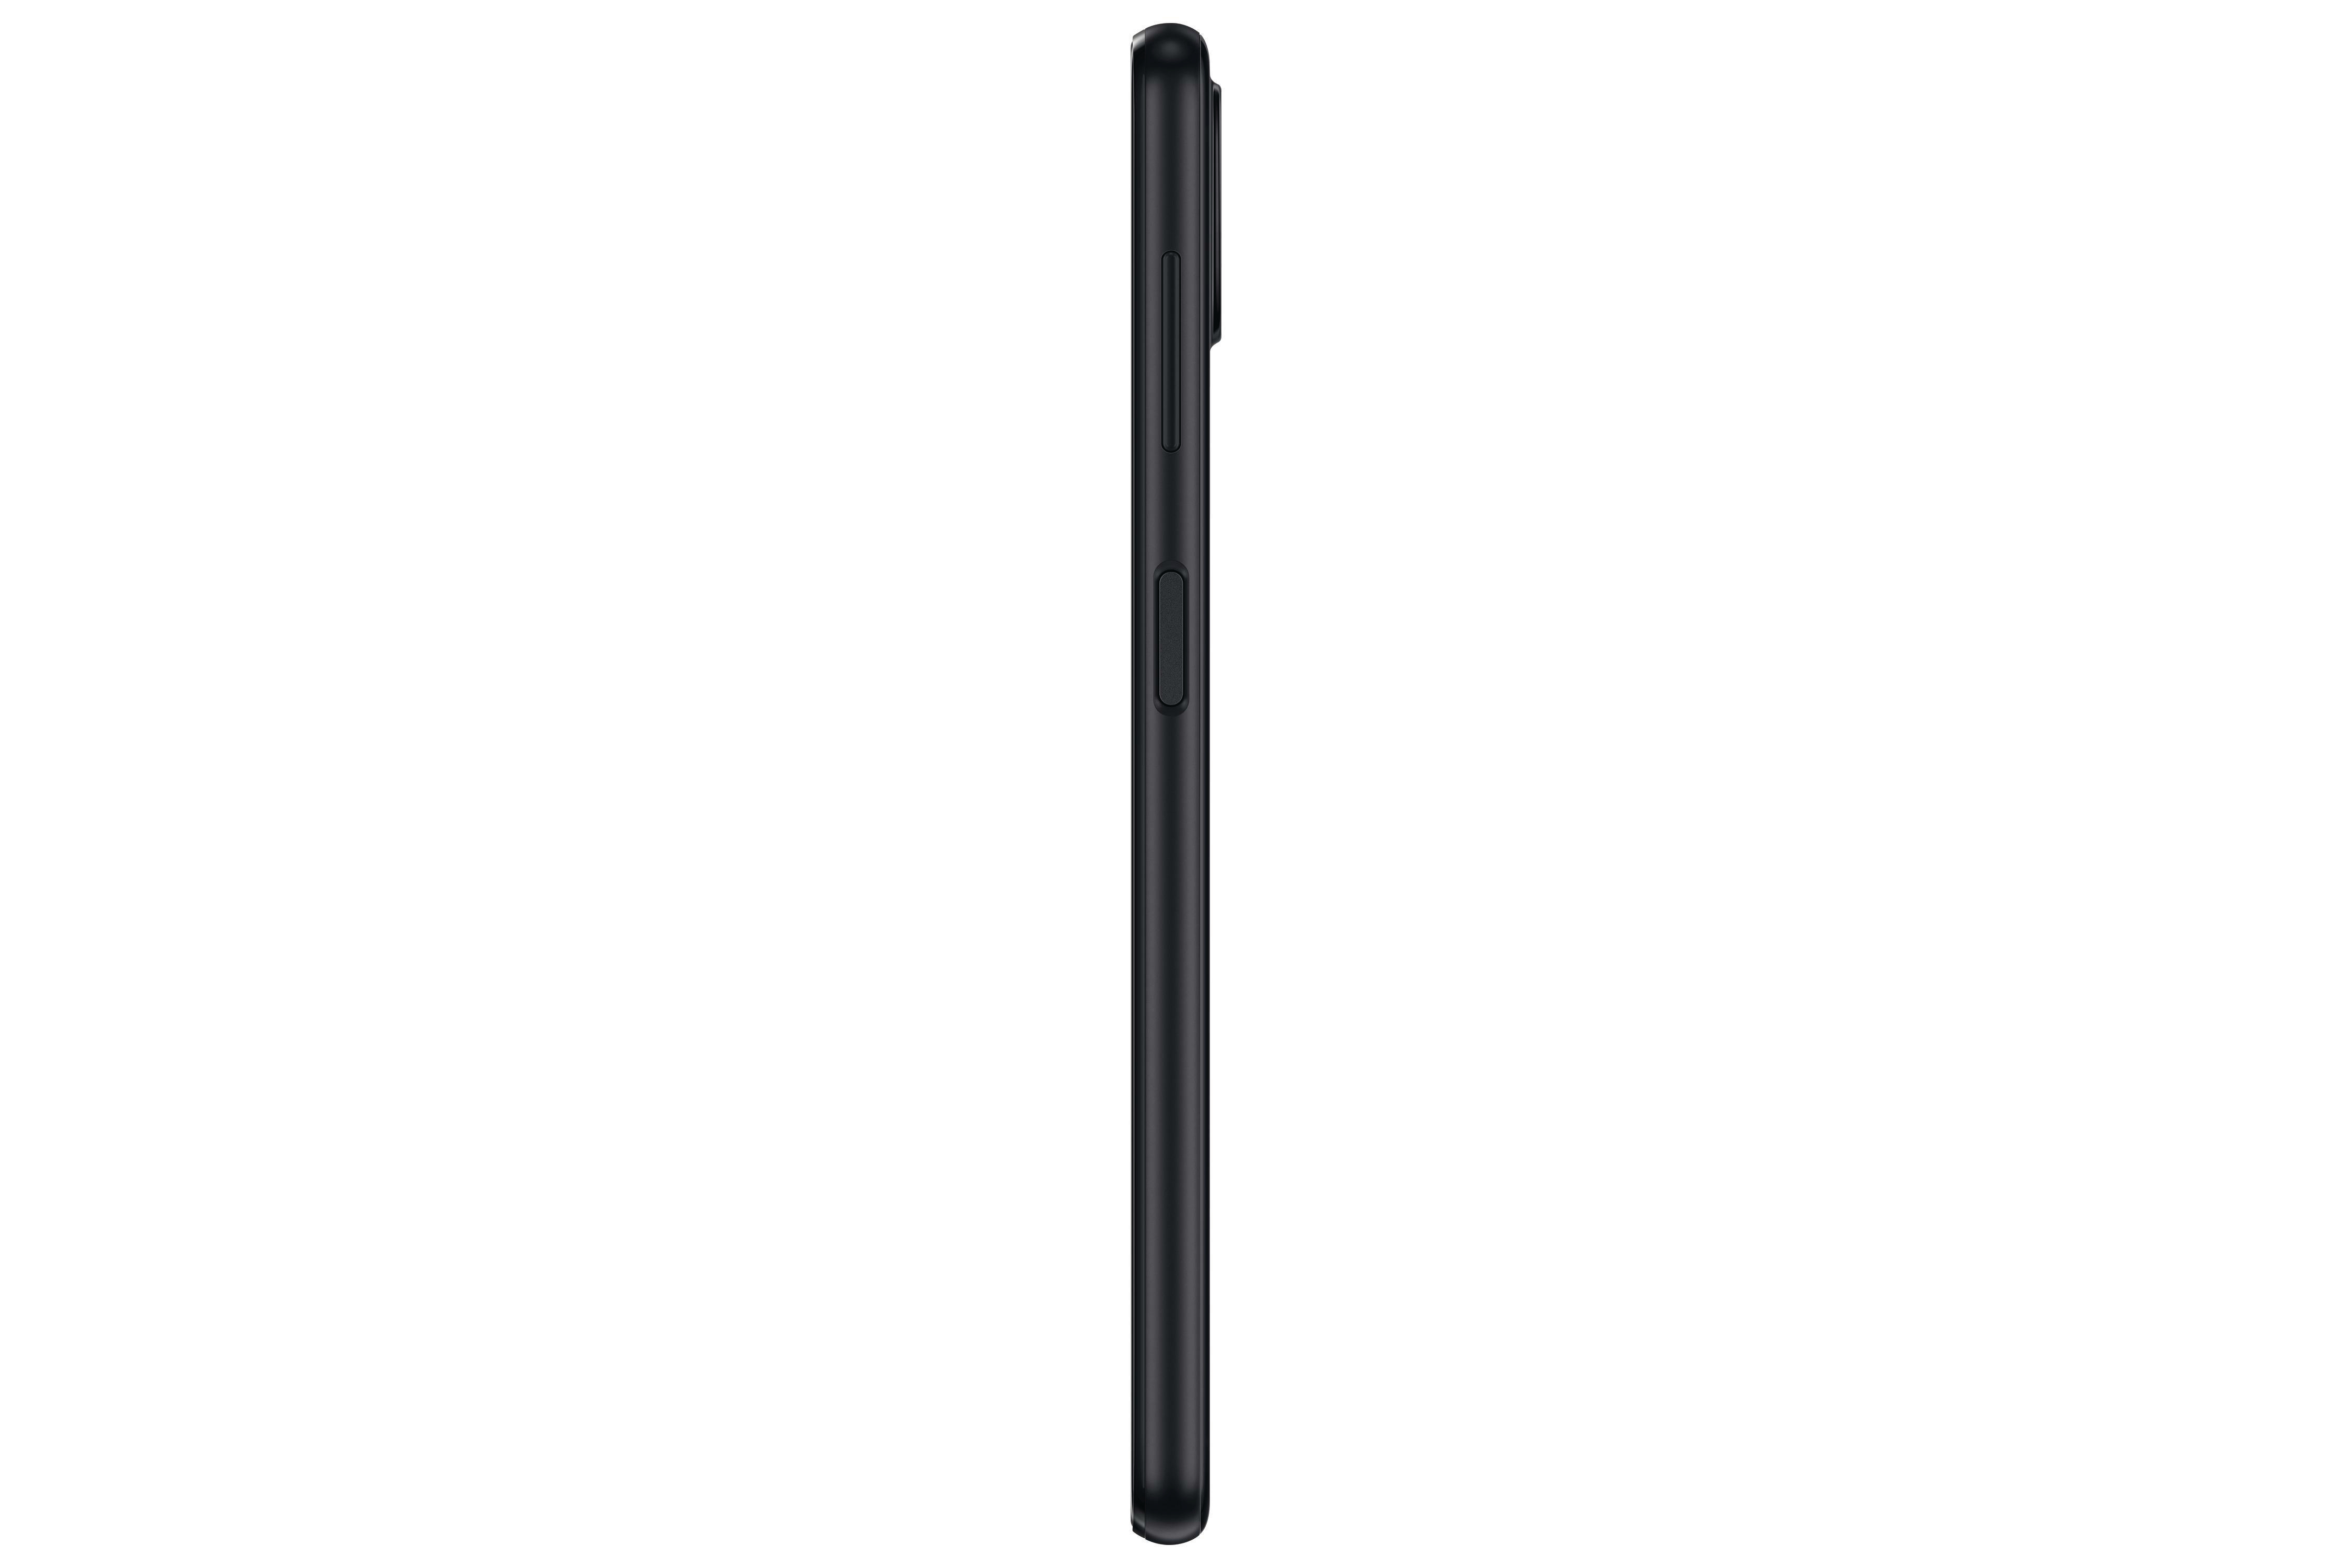 SAMSUNG Galaxy Black SIM Dual 128 GB A22